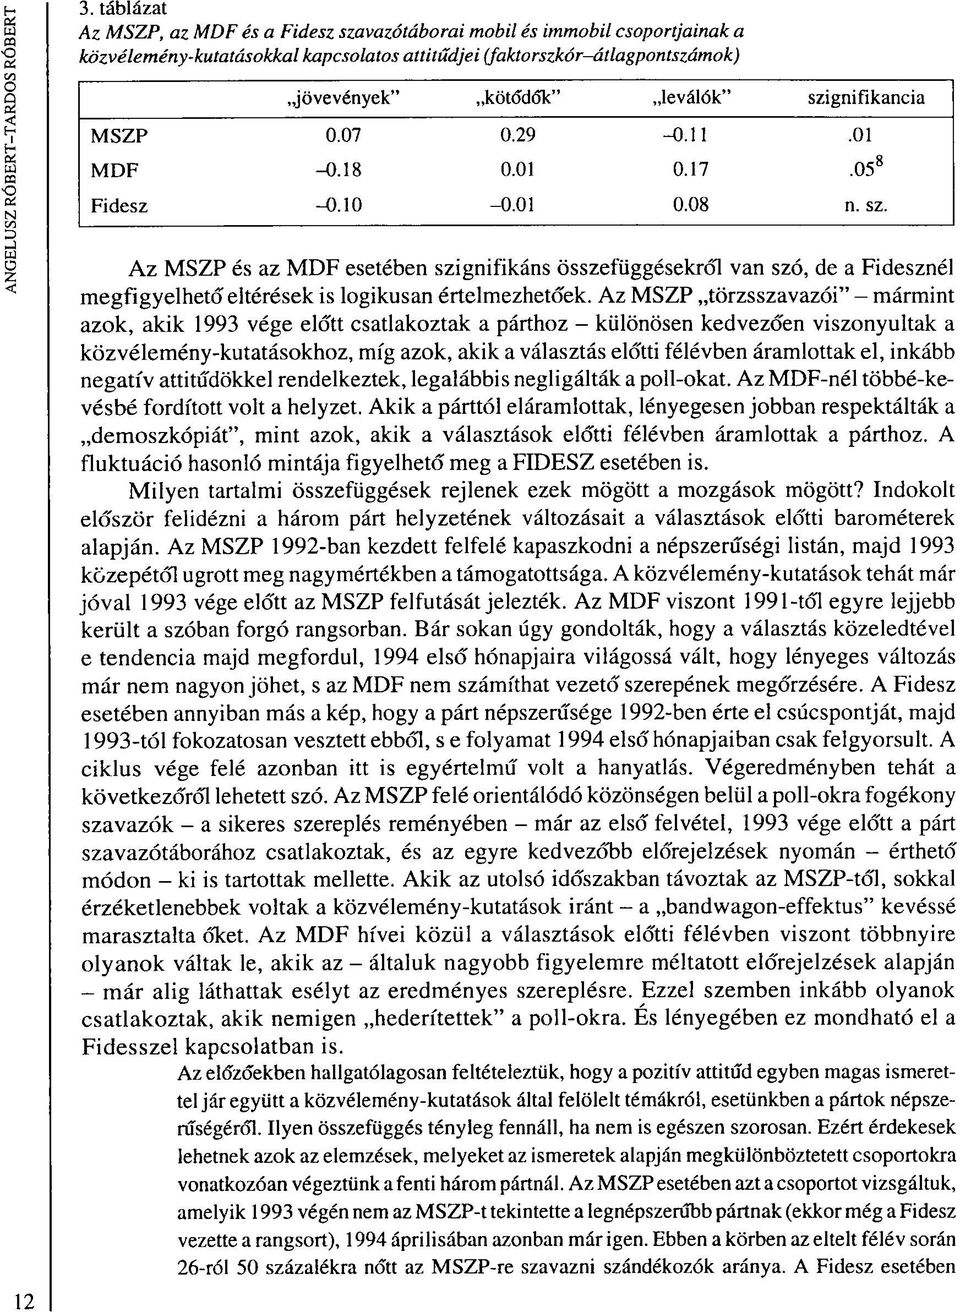 Az MSZP és az MDF esetében szignifikáns összefüggésekről van szó, de a Fidesznél megfigyelhető eltérések is logikusan értelmezhetőek.